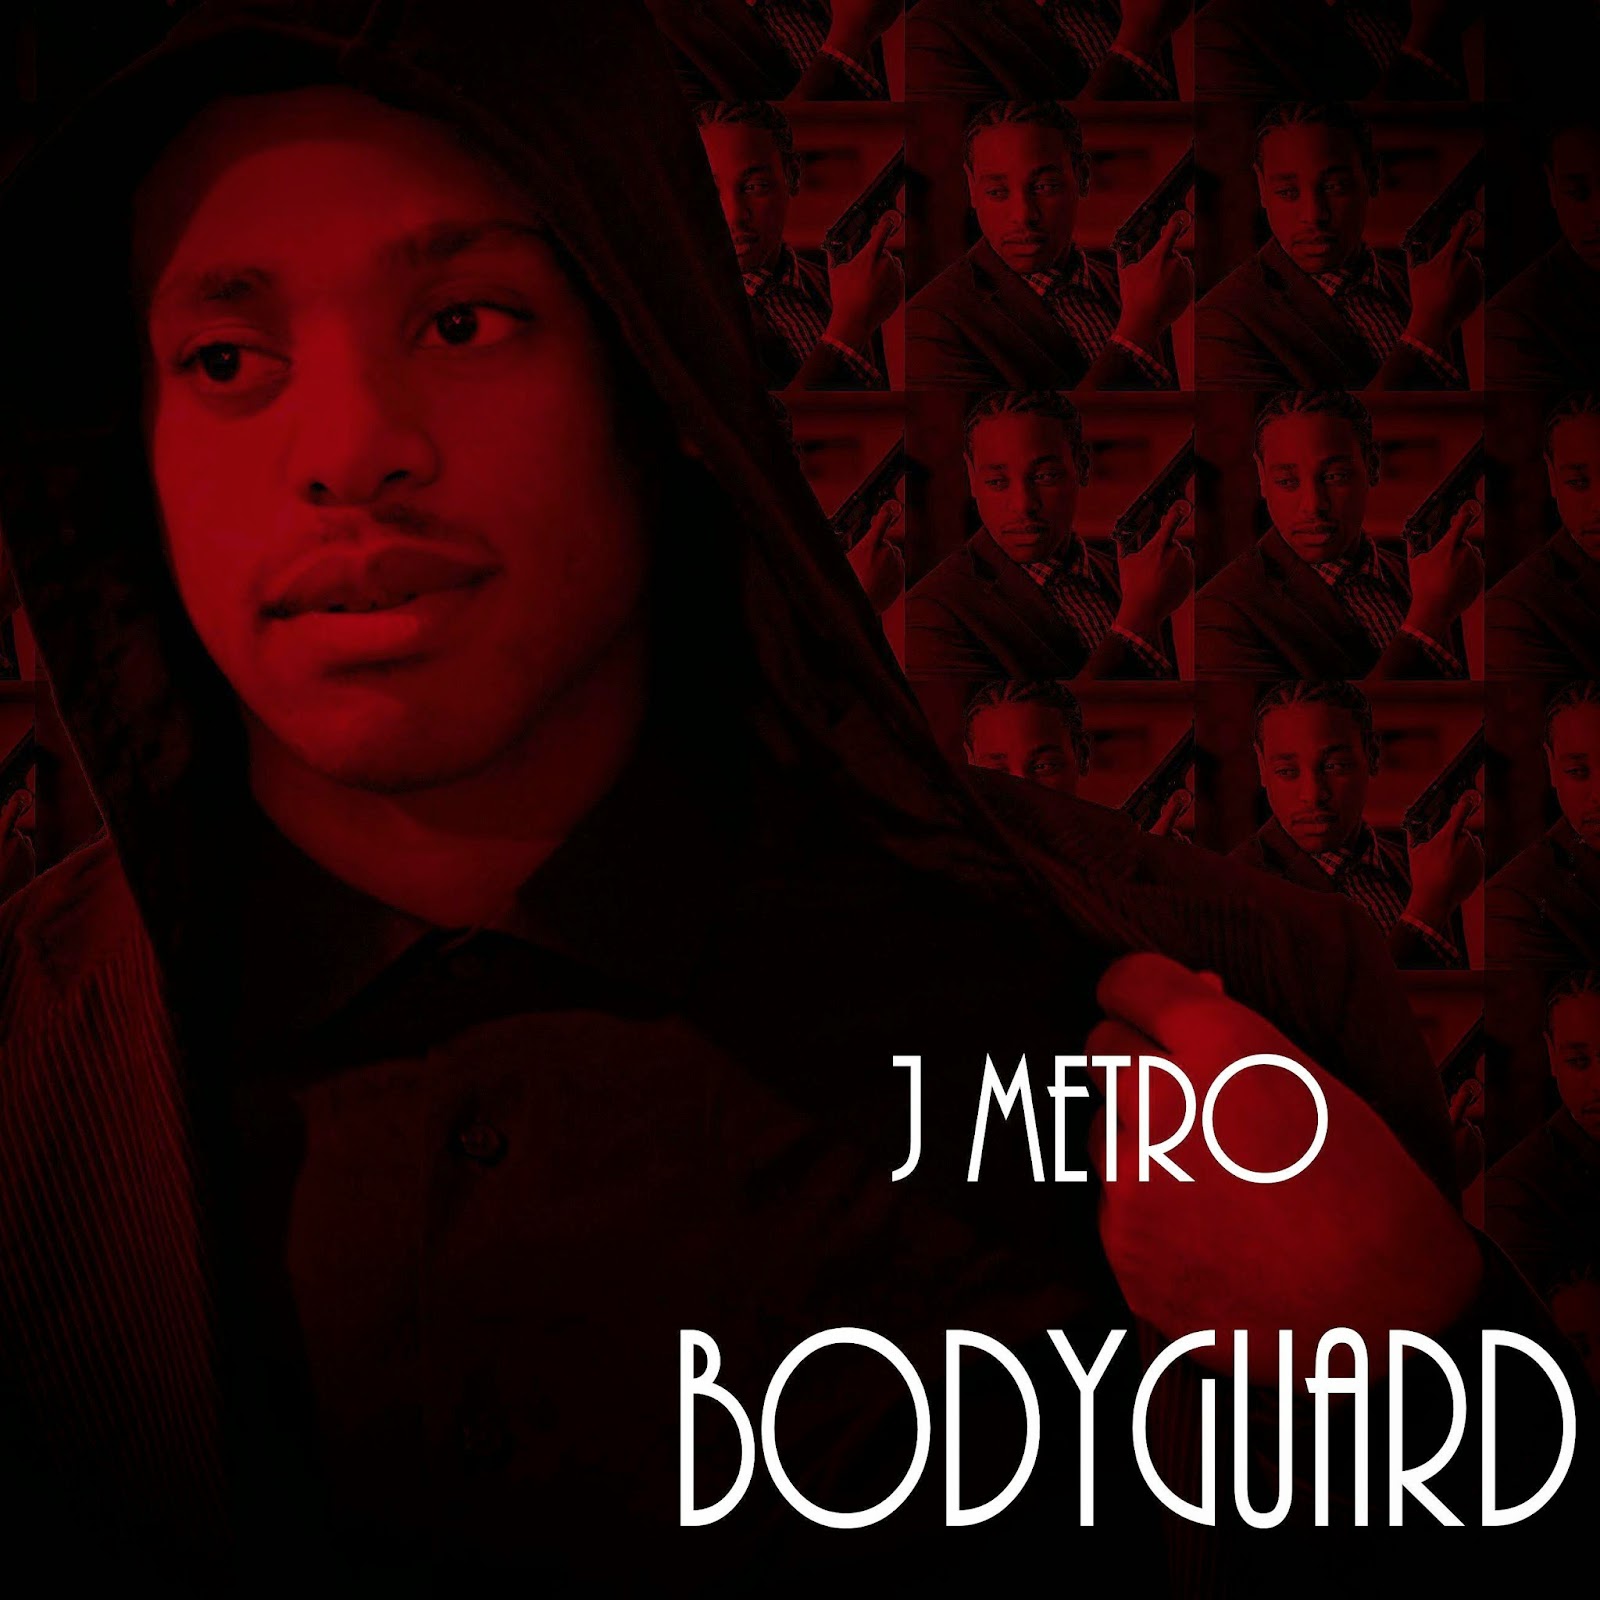 J Metro (@jmetromusic)-  "Bodyguard" (Single) via @rRAPpromo